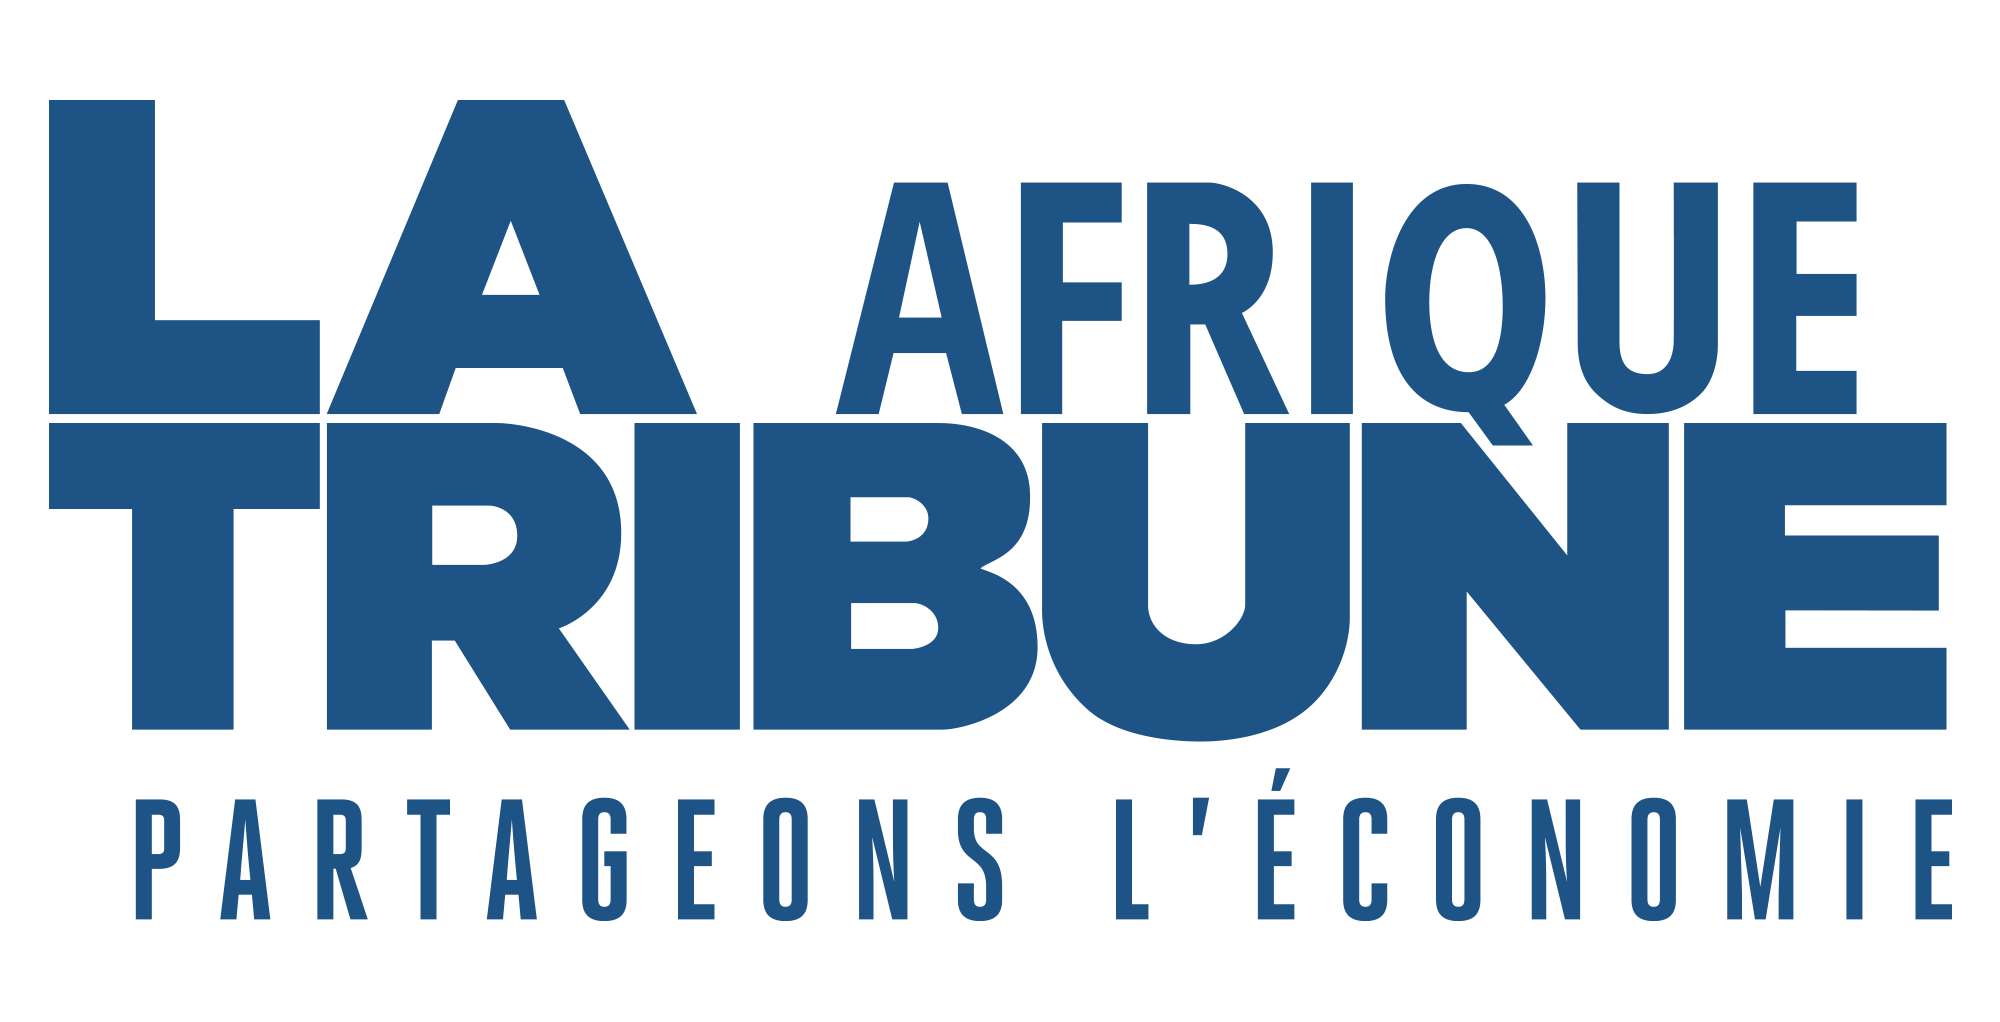 La Tribune Afrique